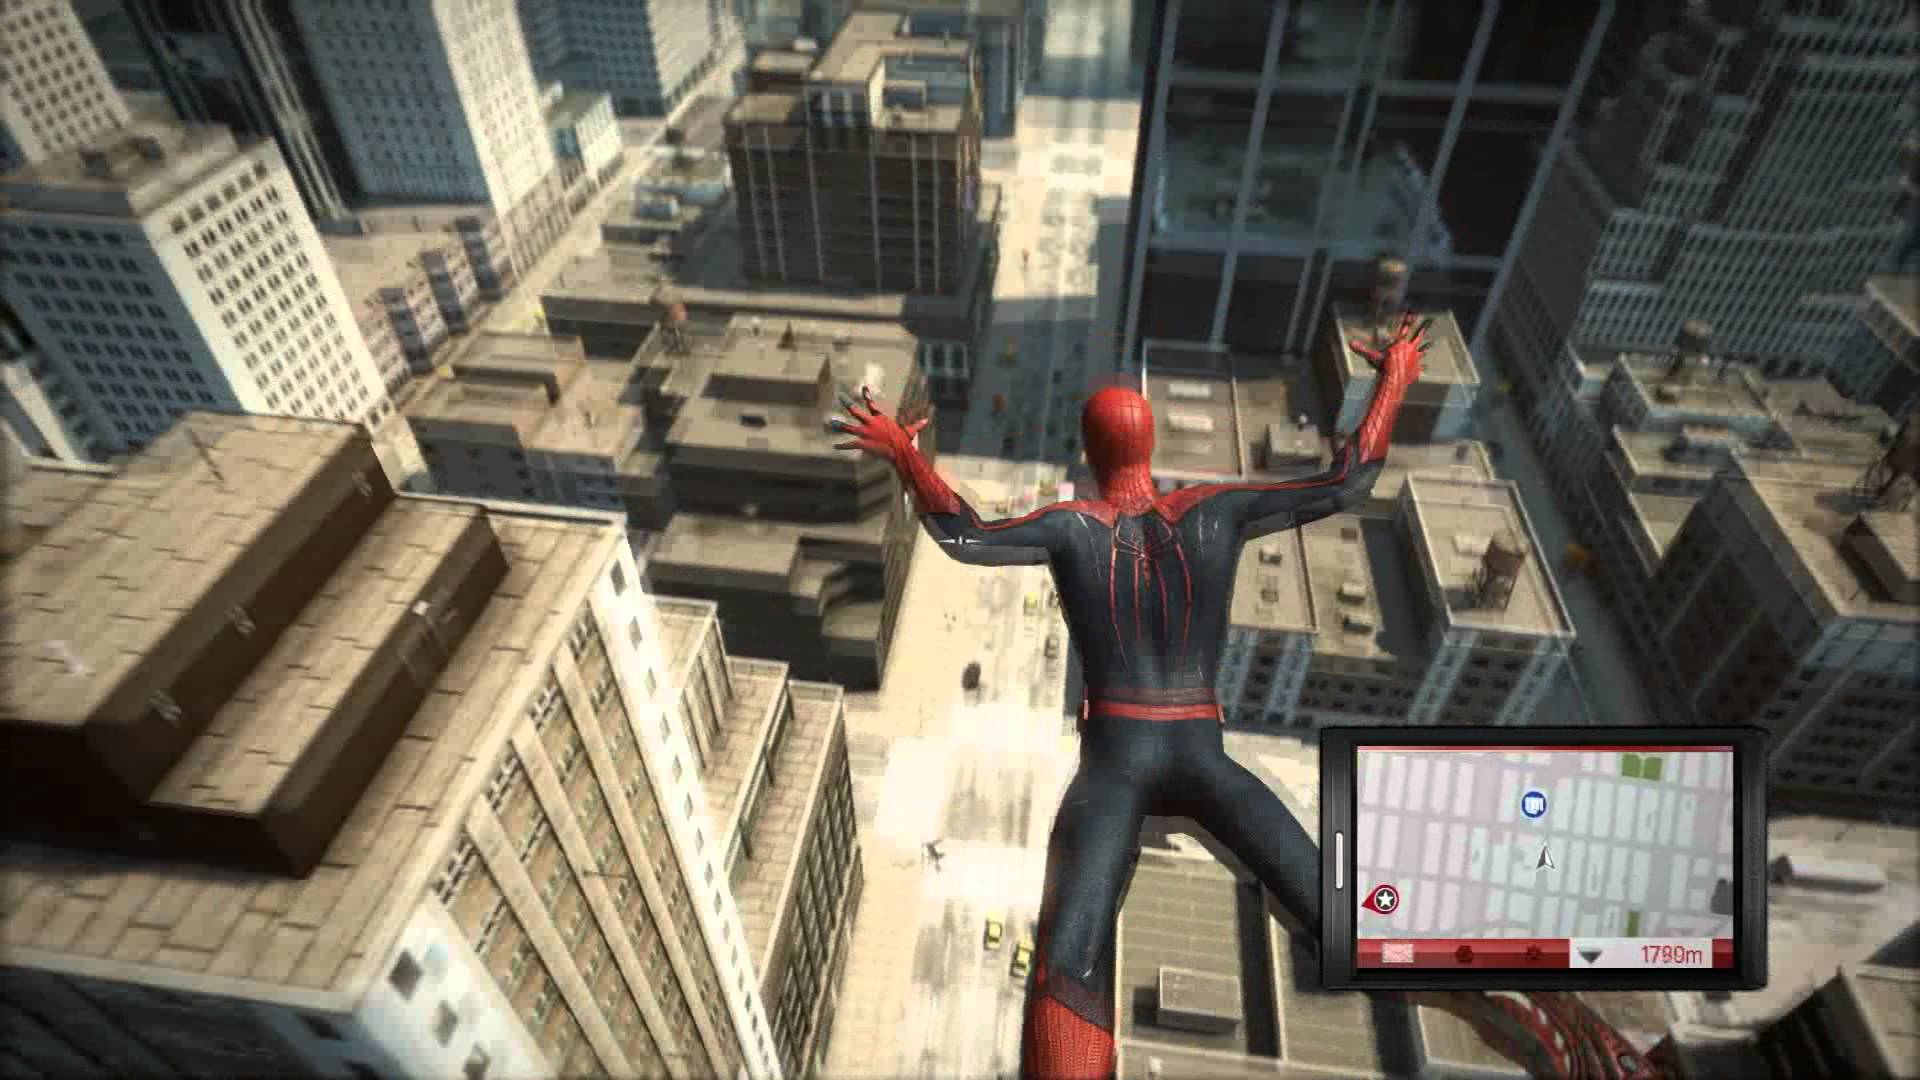 The amazing Spider-man игра геймплей. The amazing Spider man 1 игра геймплей. The amazing Spider man 2 игра геймплей. The amazing Spider-man 2 геймплей. Игры 2018 системные требования